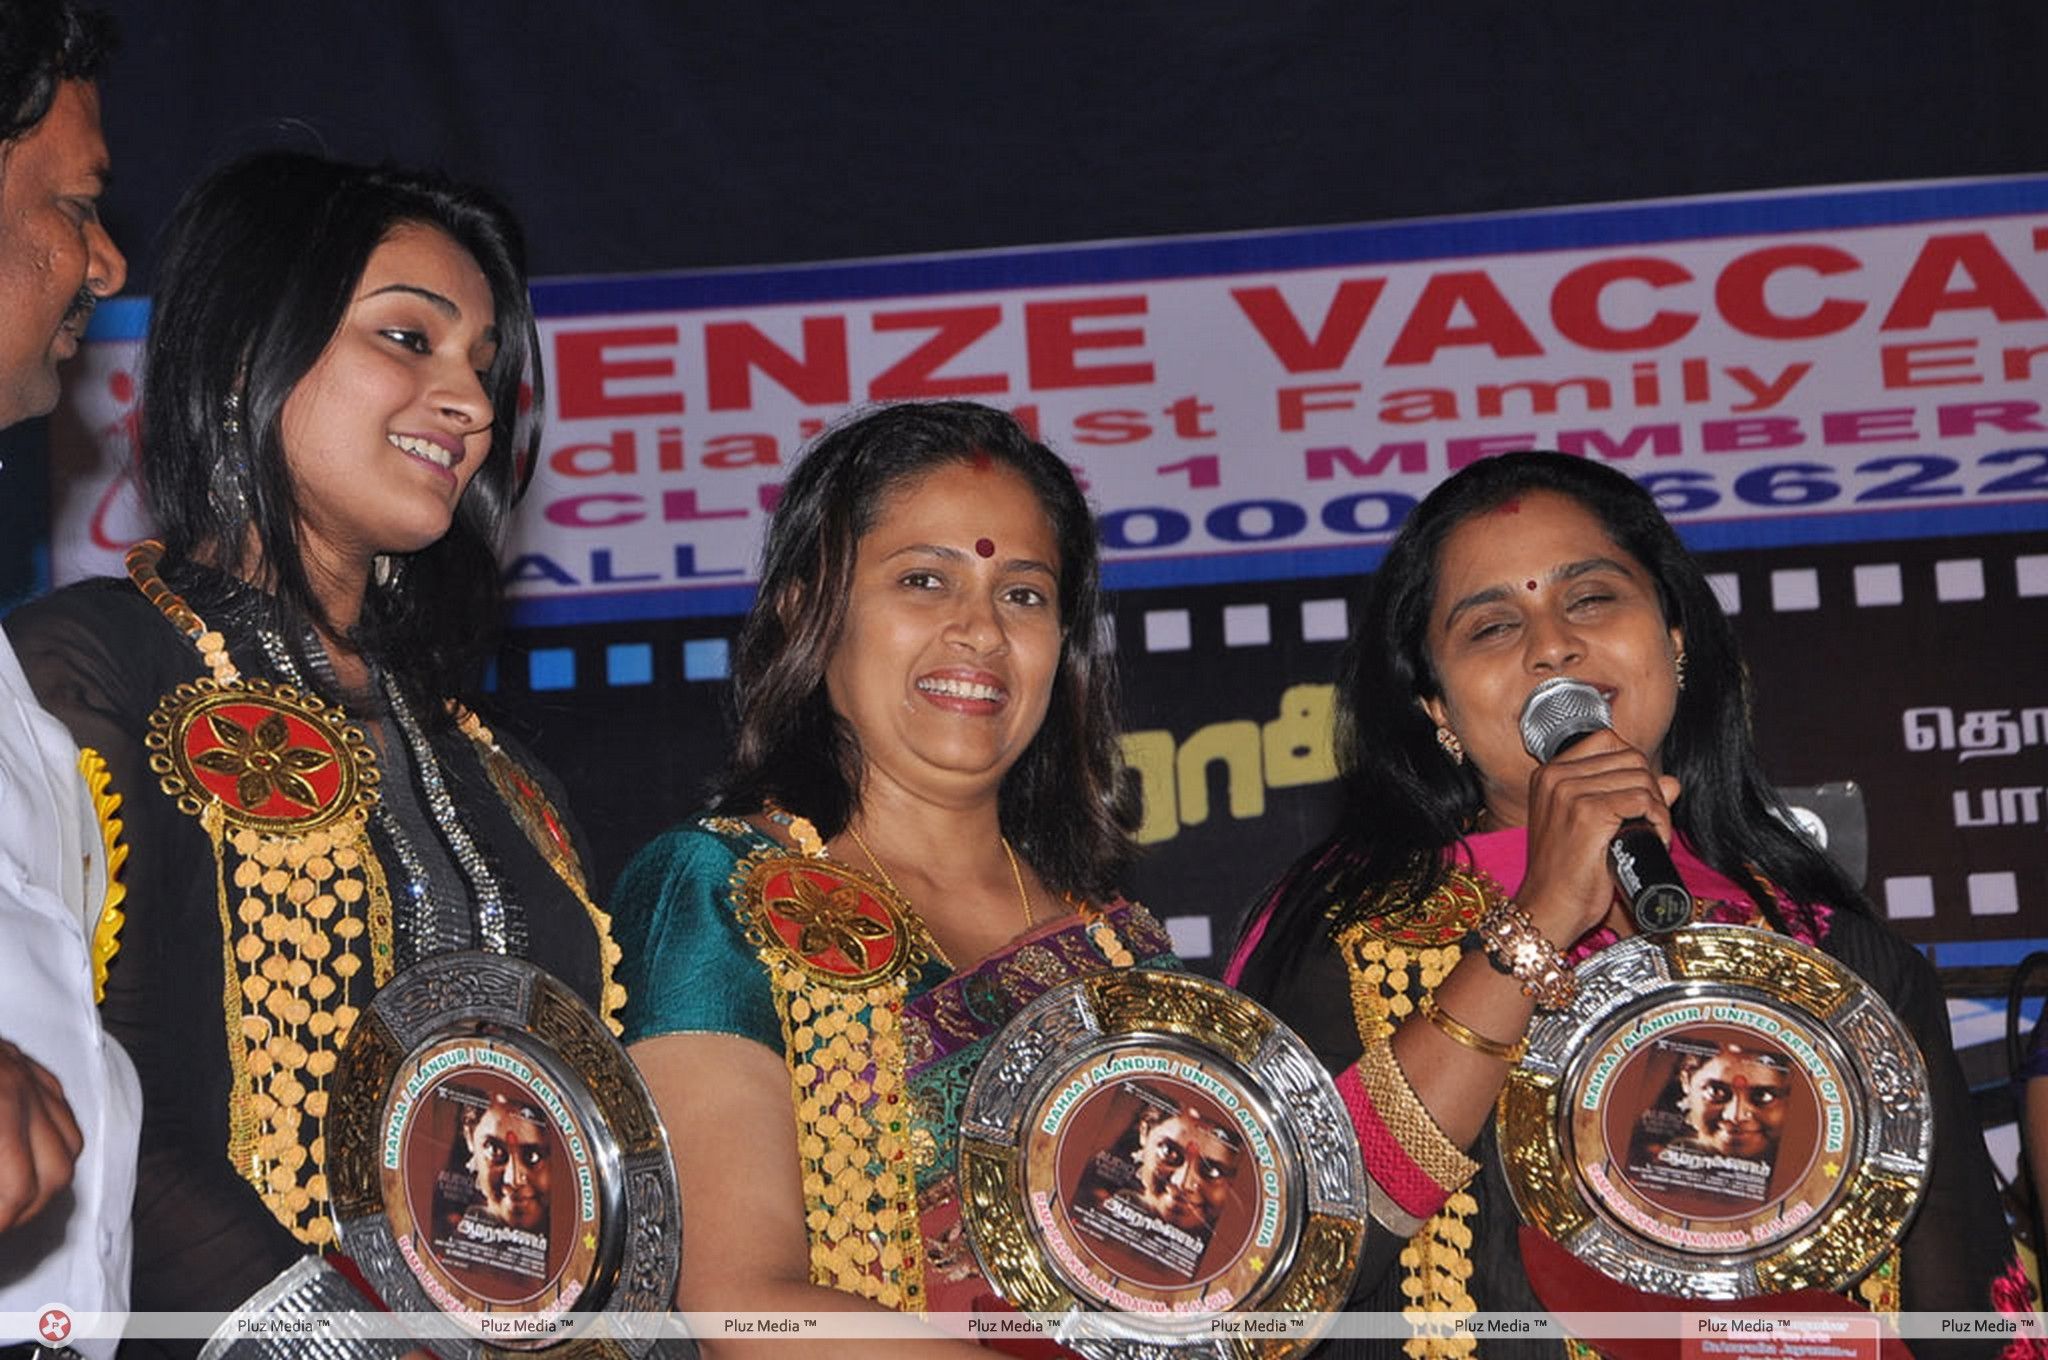 Aarohanam Film Felicitated Event Stills | Picture 326564